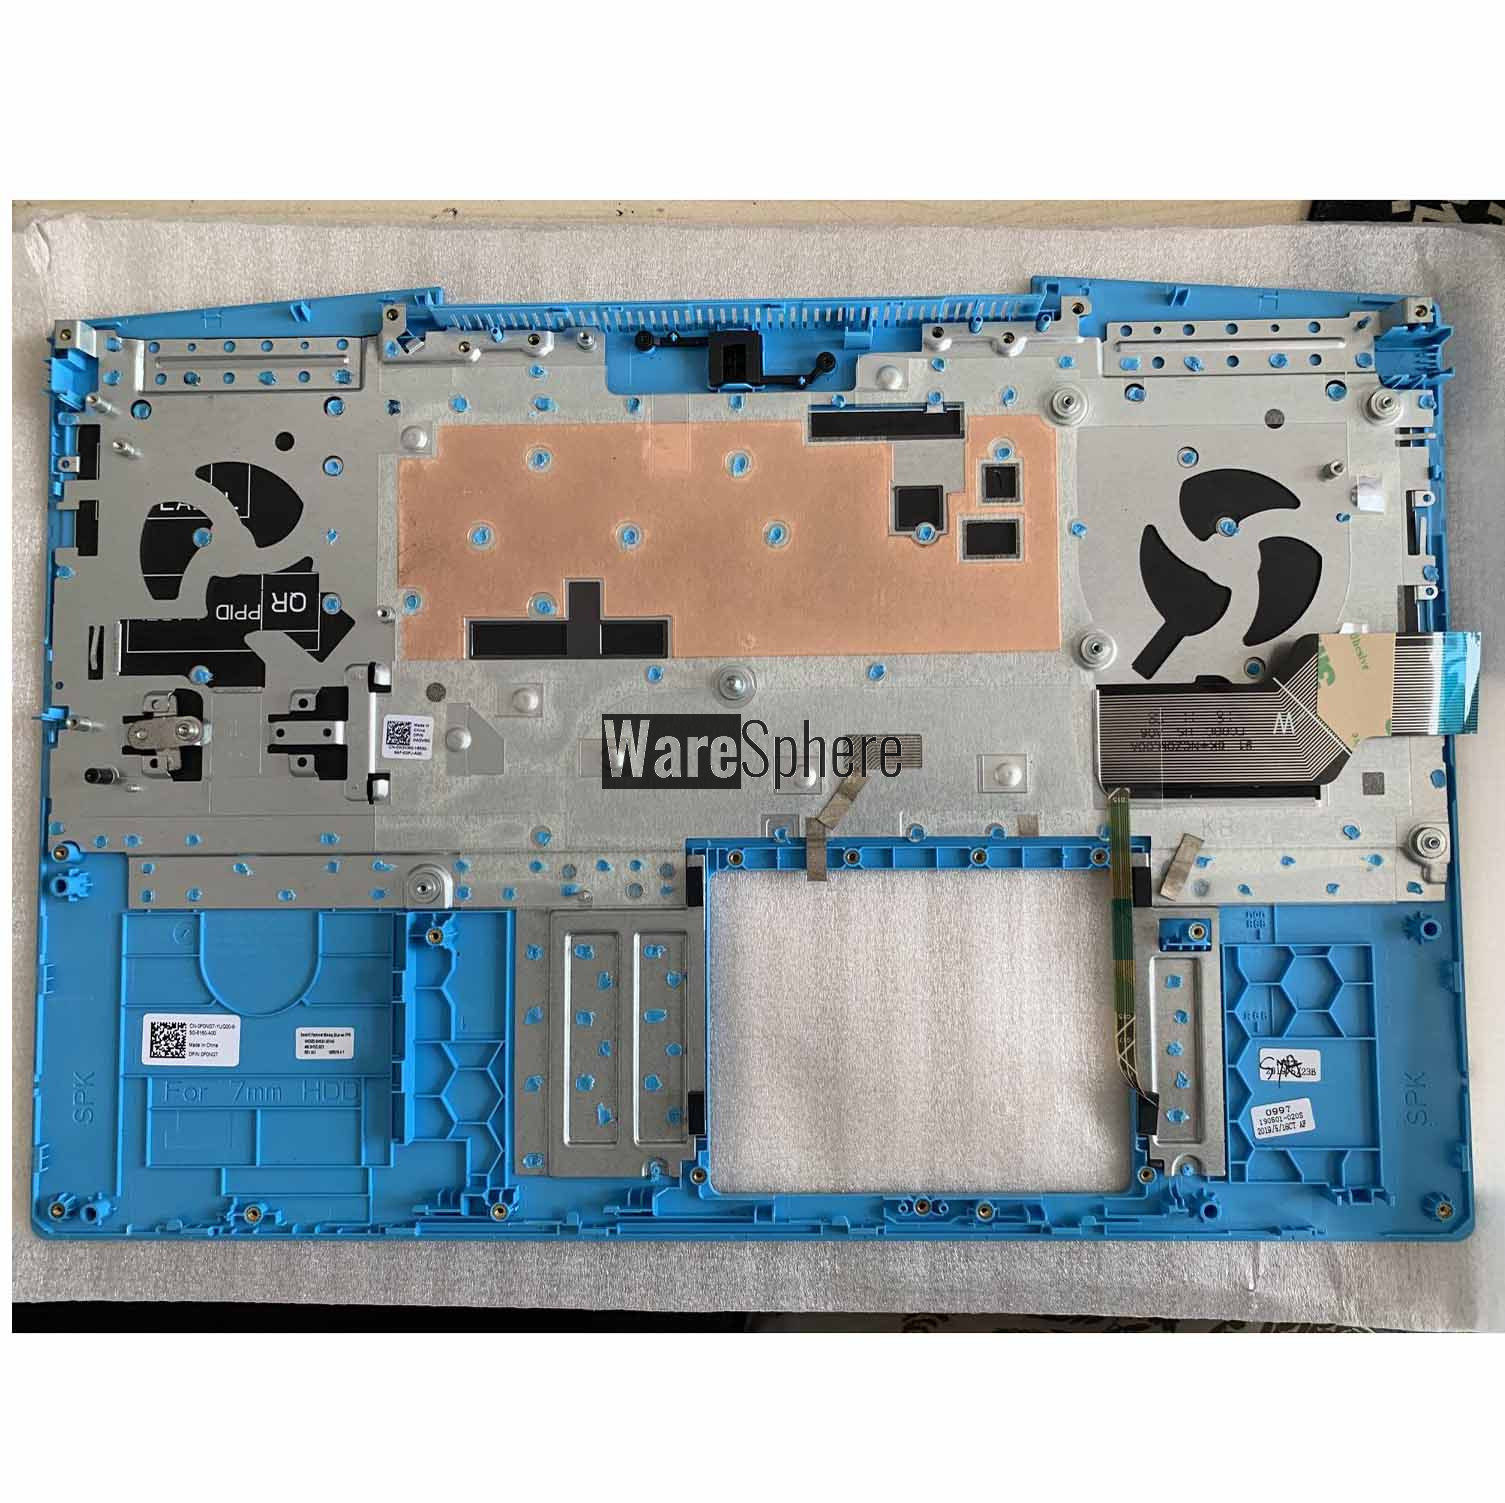 Top Cover Upper Case Blue side for Dell G3 15 3590 With Backlit Keyboard Palmrest 460.0H703.0001 Black